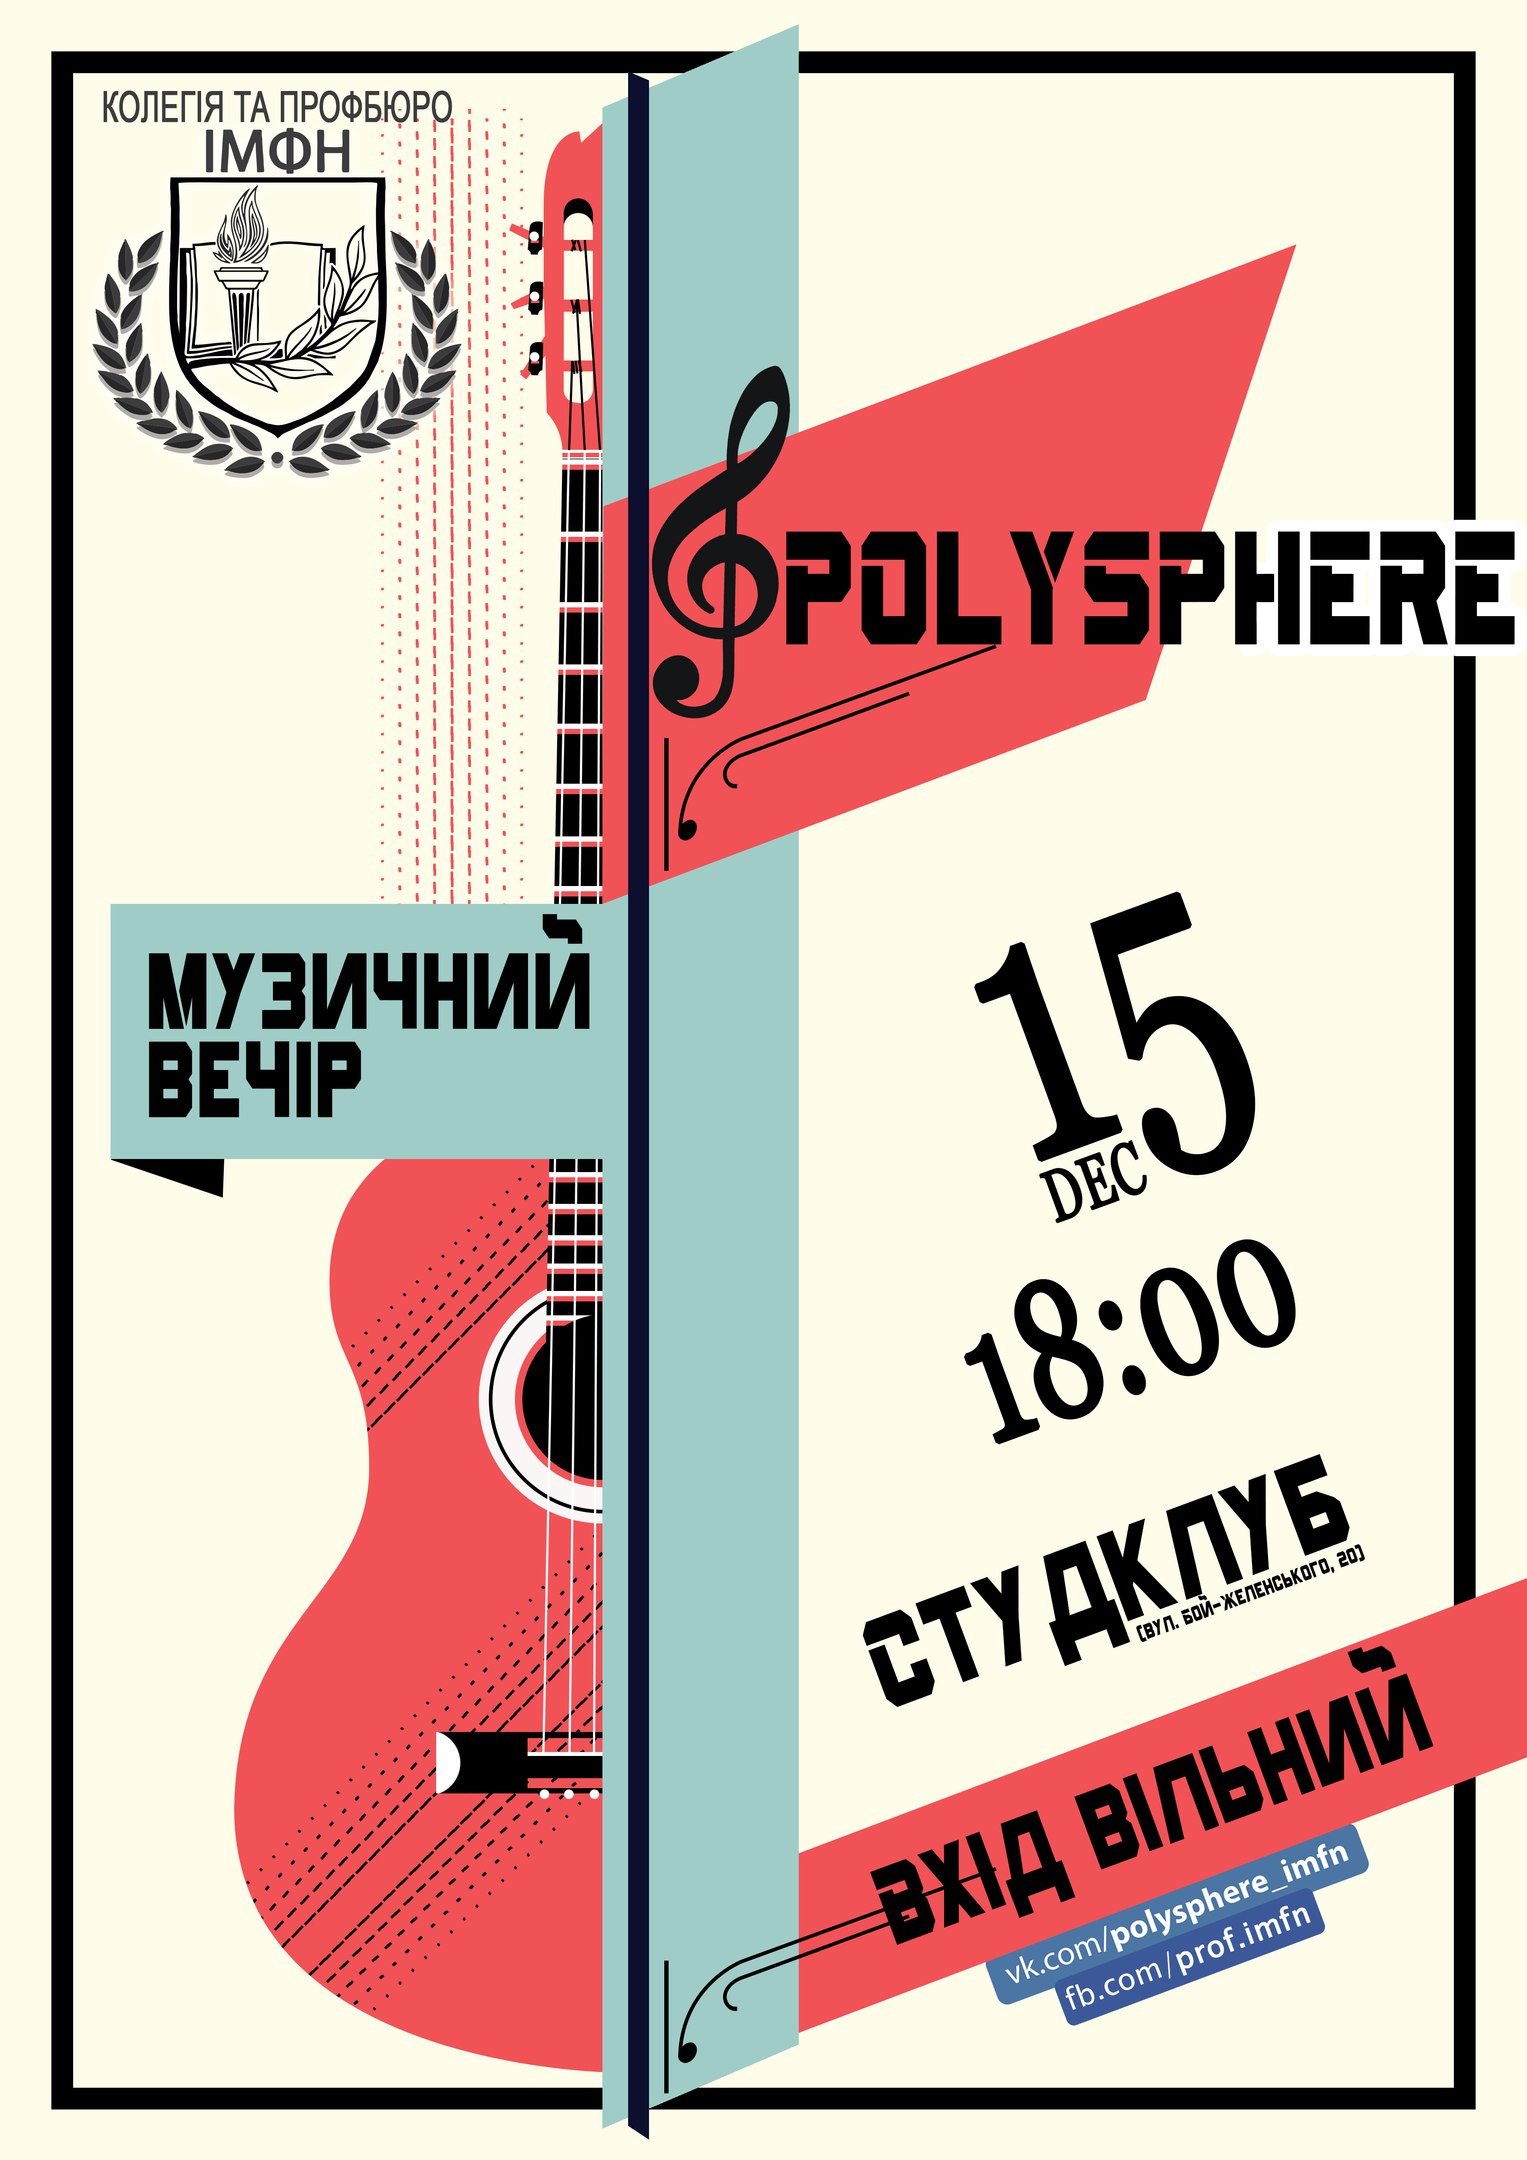 музичний вечір «Polysphere»